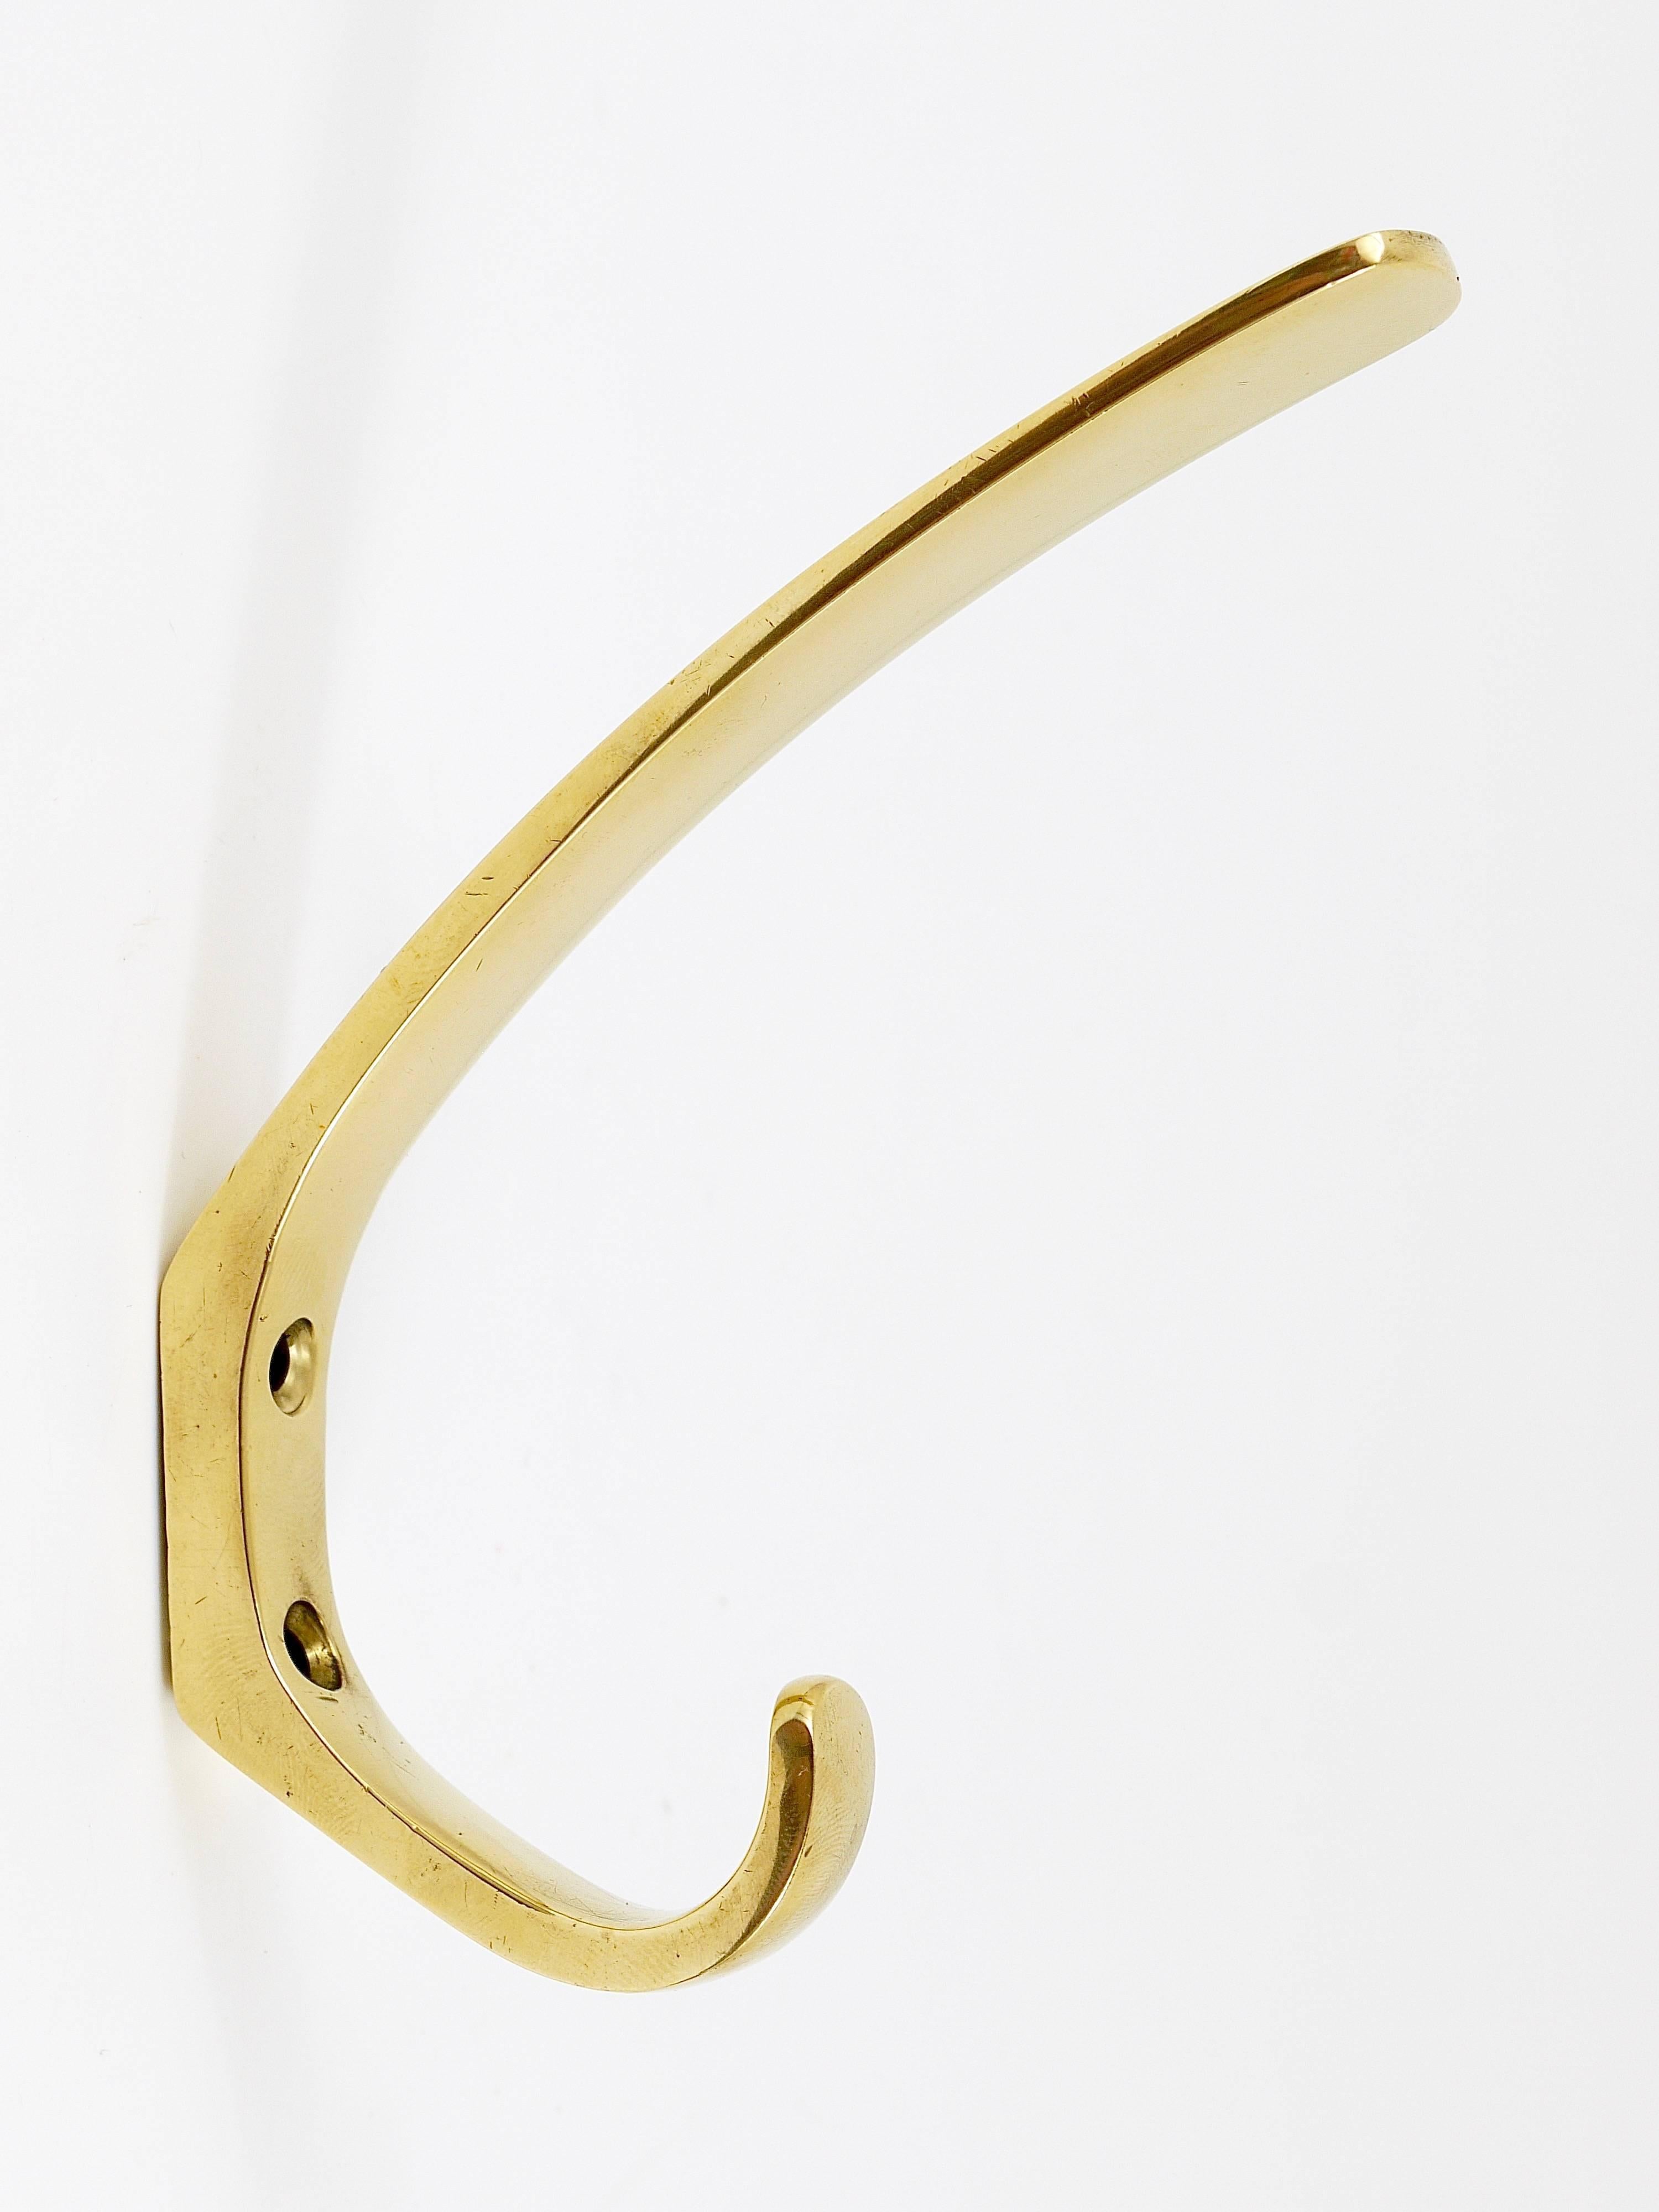 Up to 13 Austrian Modernist Brass Wall Coat Hooks by Hertha Baller, 1950s 1